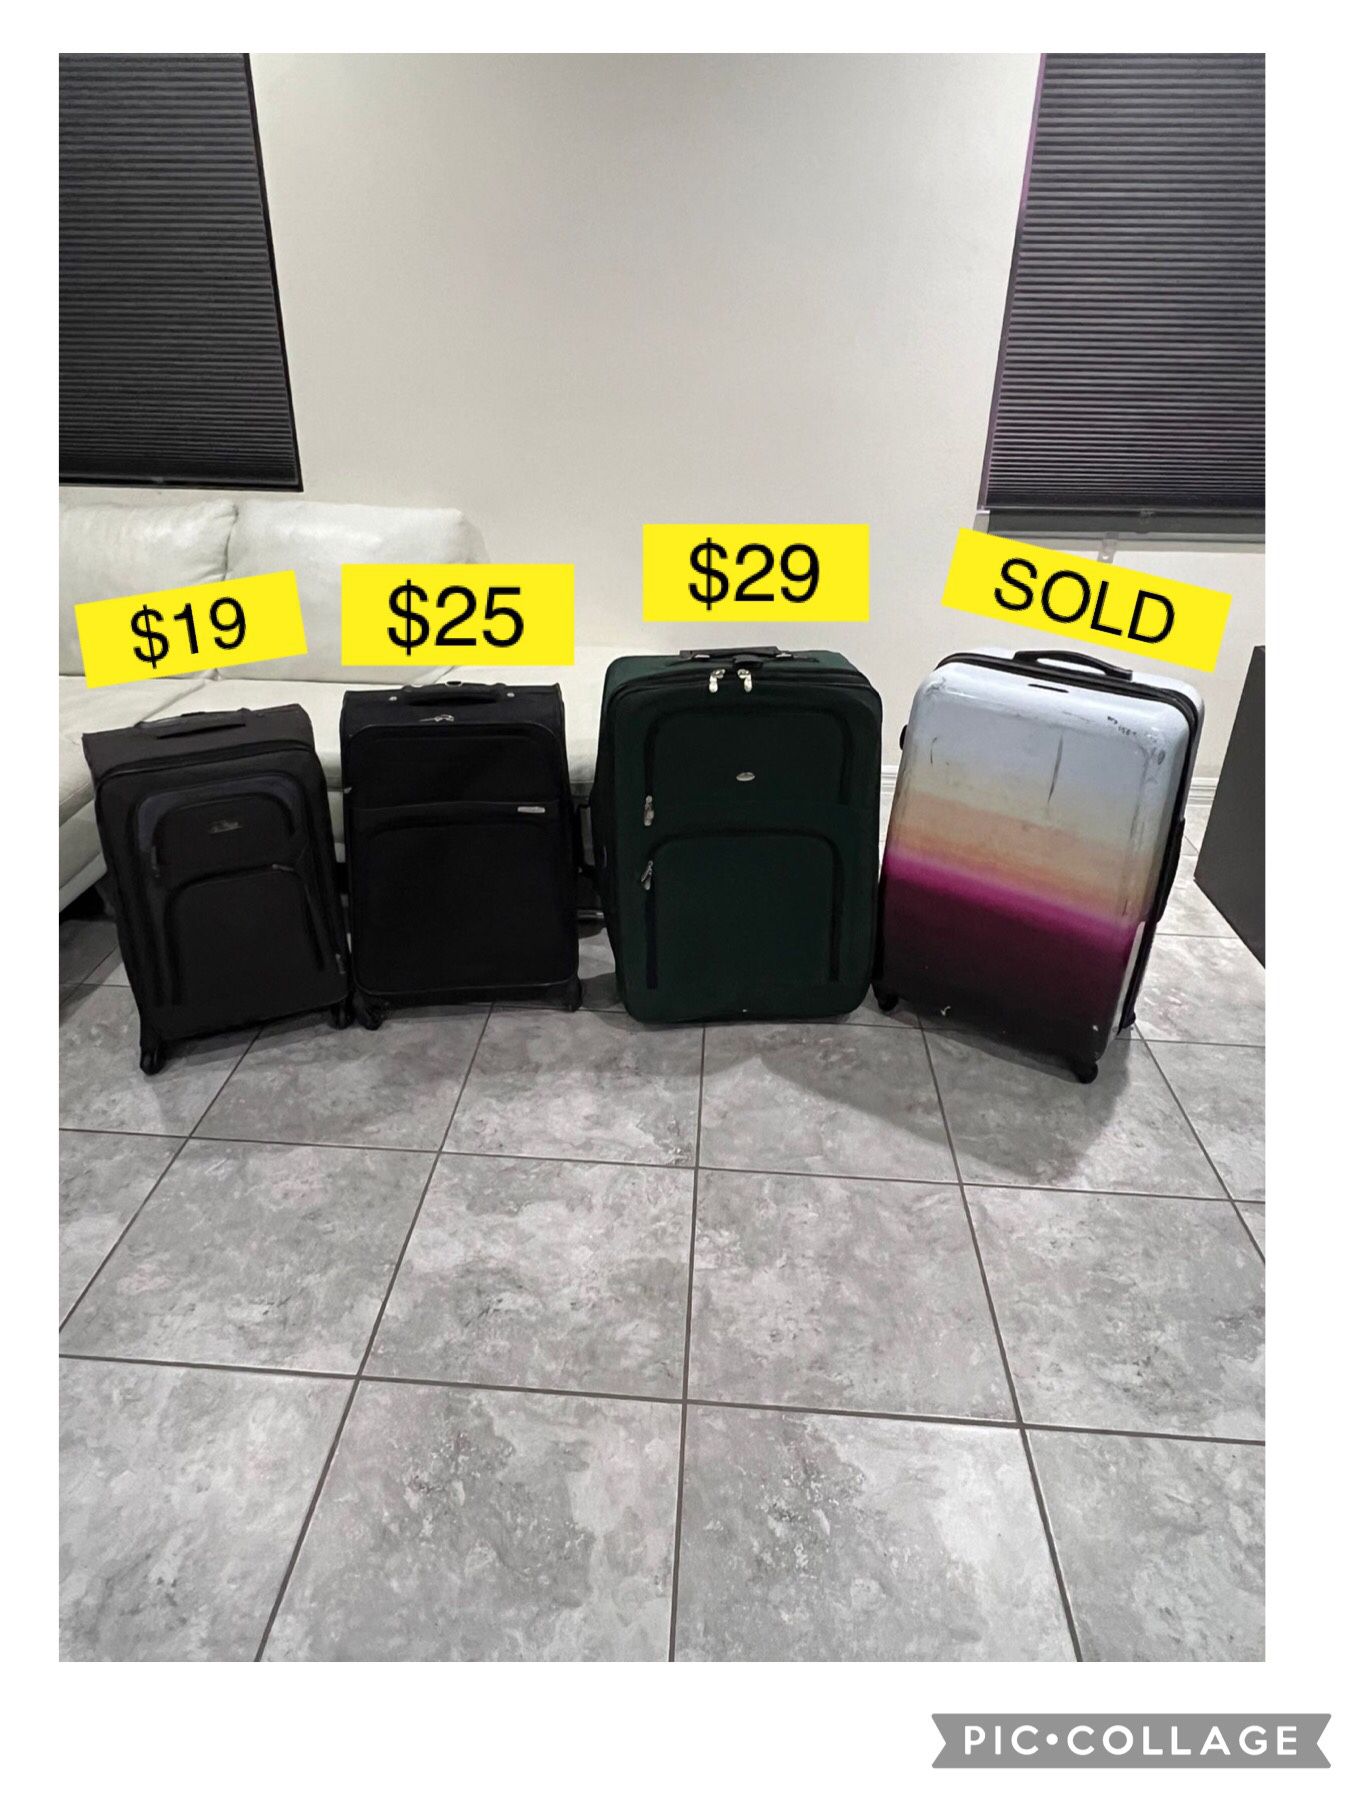 Big and medium luggages / Maletas grandes y medianas